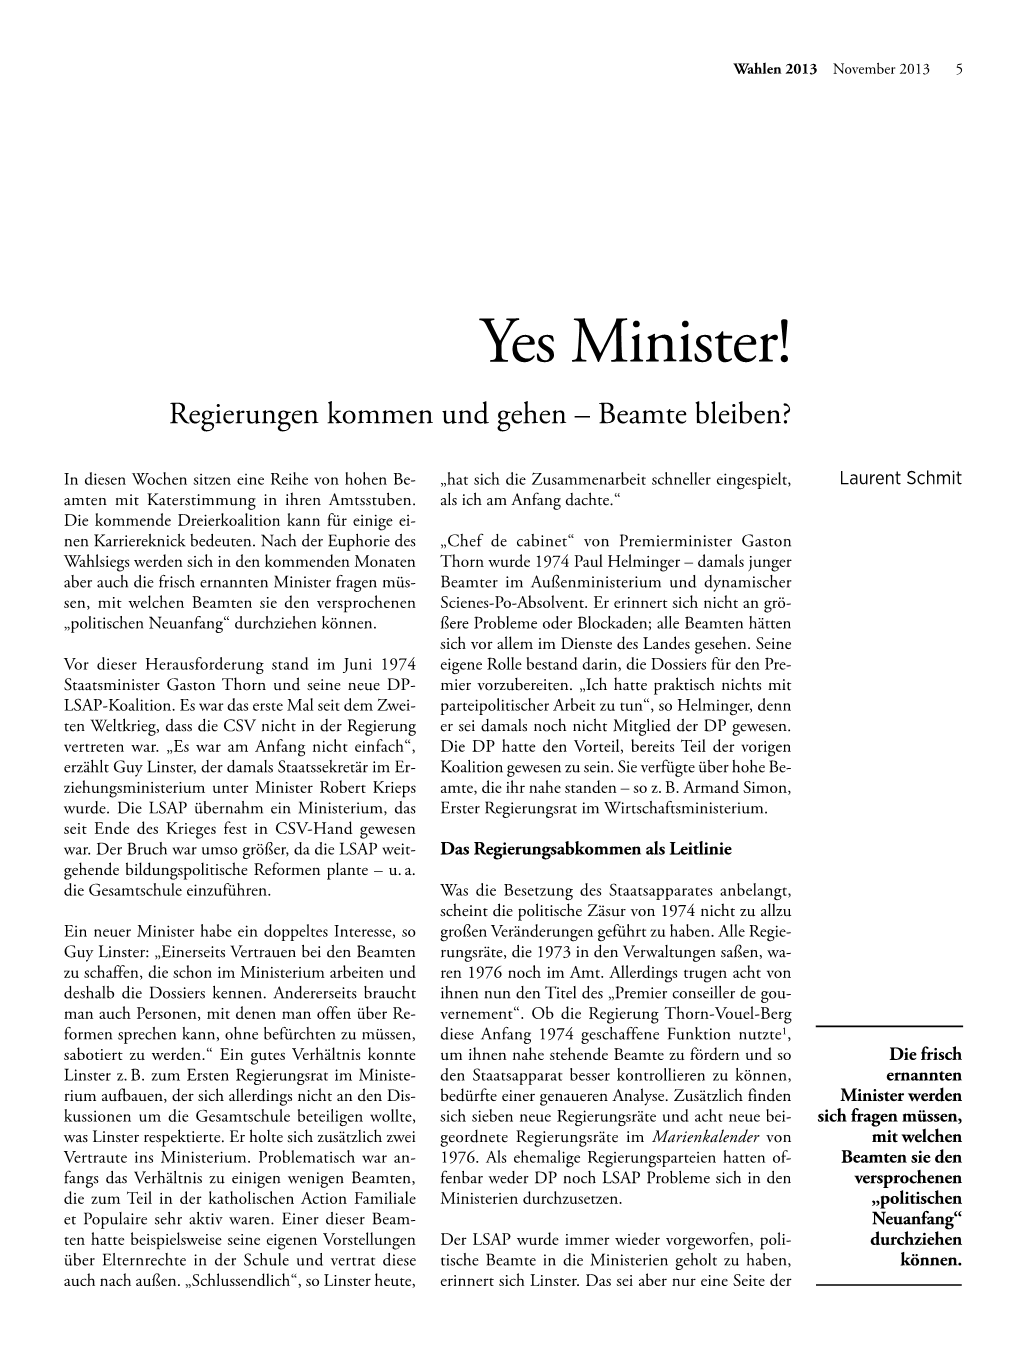 Yes Minister! Regierungen Kommen Und Gehen – Beamte Bleiben?